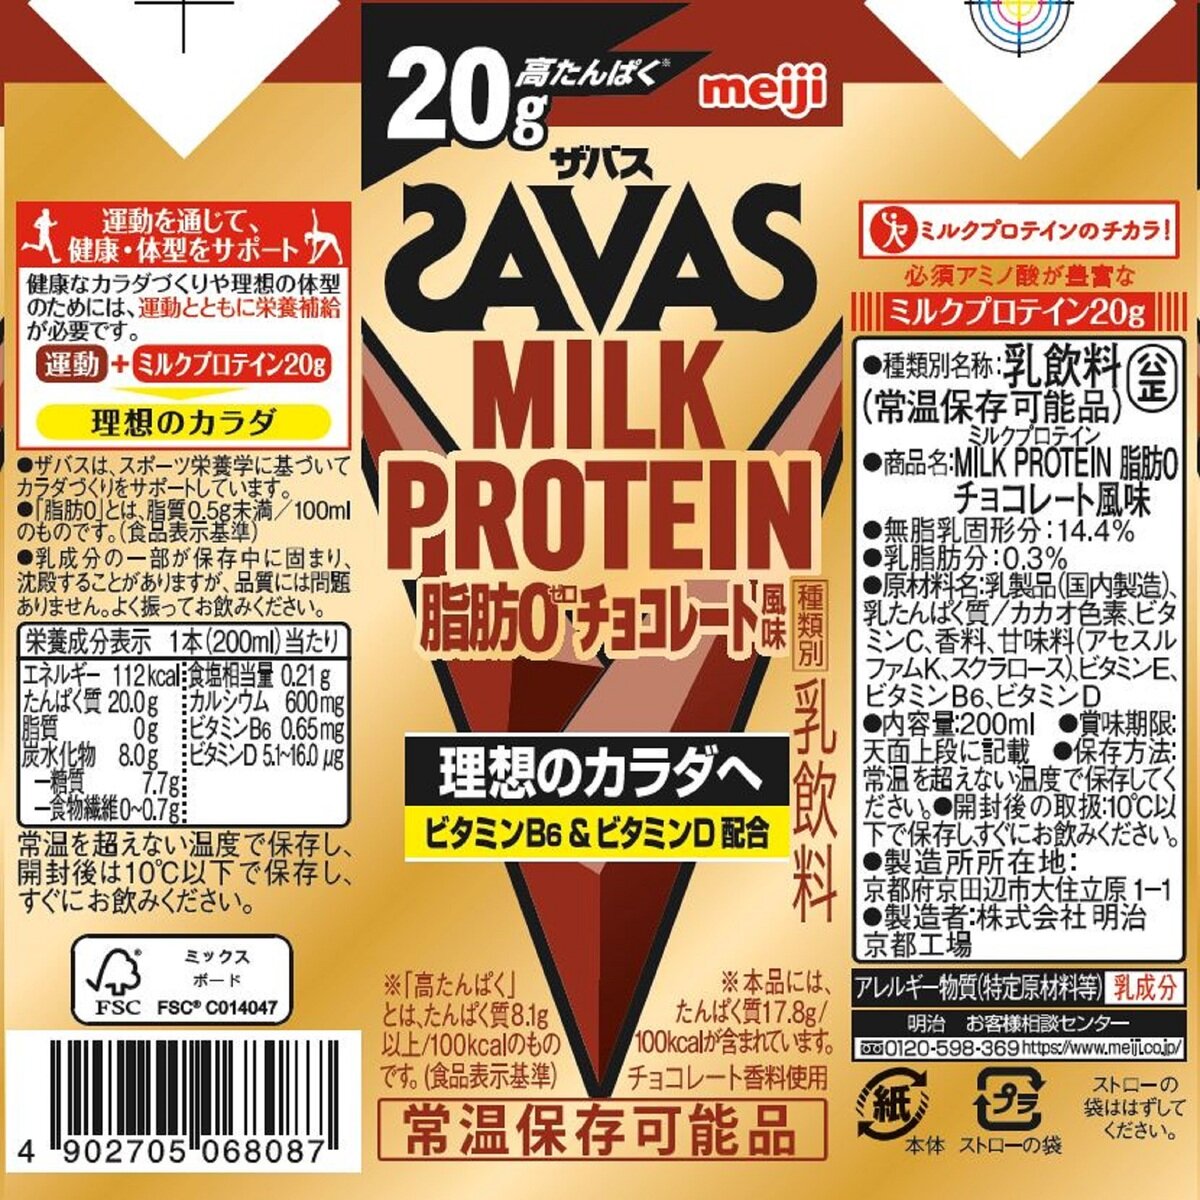 ザバス(SAVAS) ミルクプロテイン 20g チョコレート風味 200ml×24本